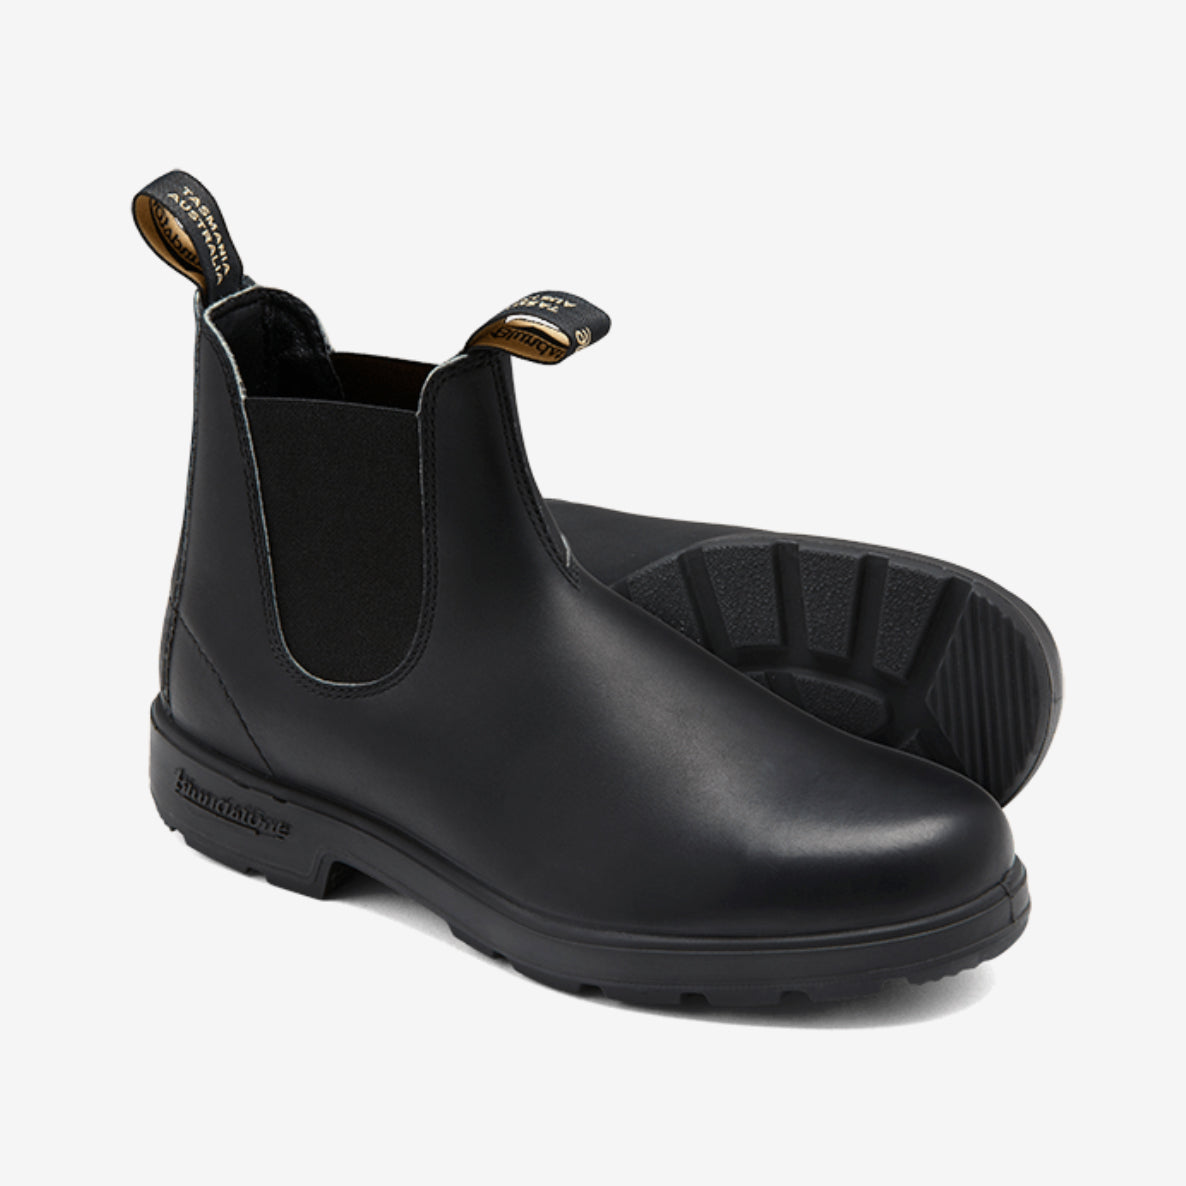 Boots ORIGINALS, black